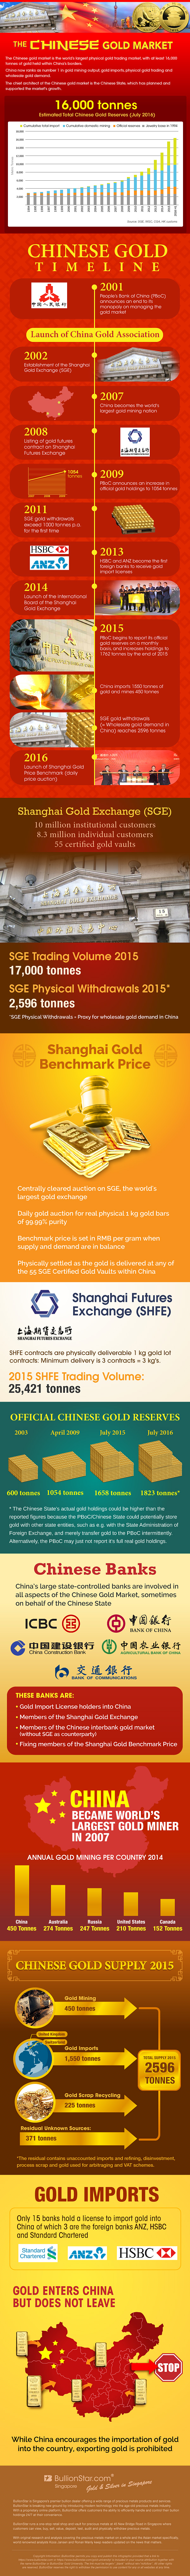 Visualizing the Chinese Gold Market